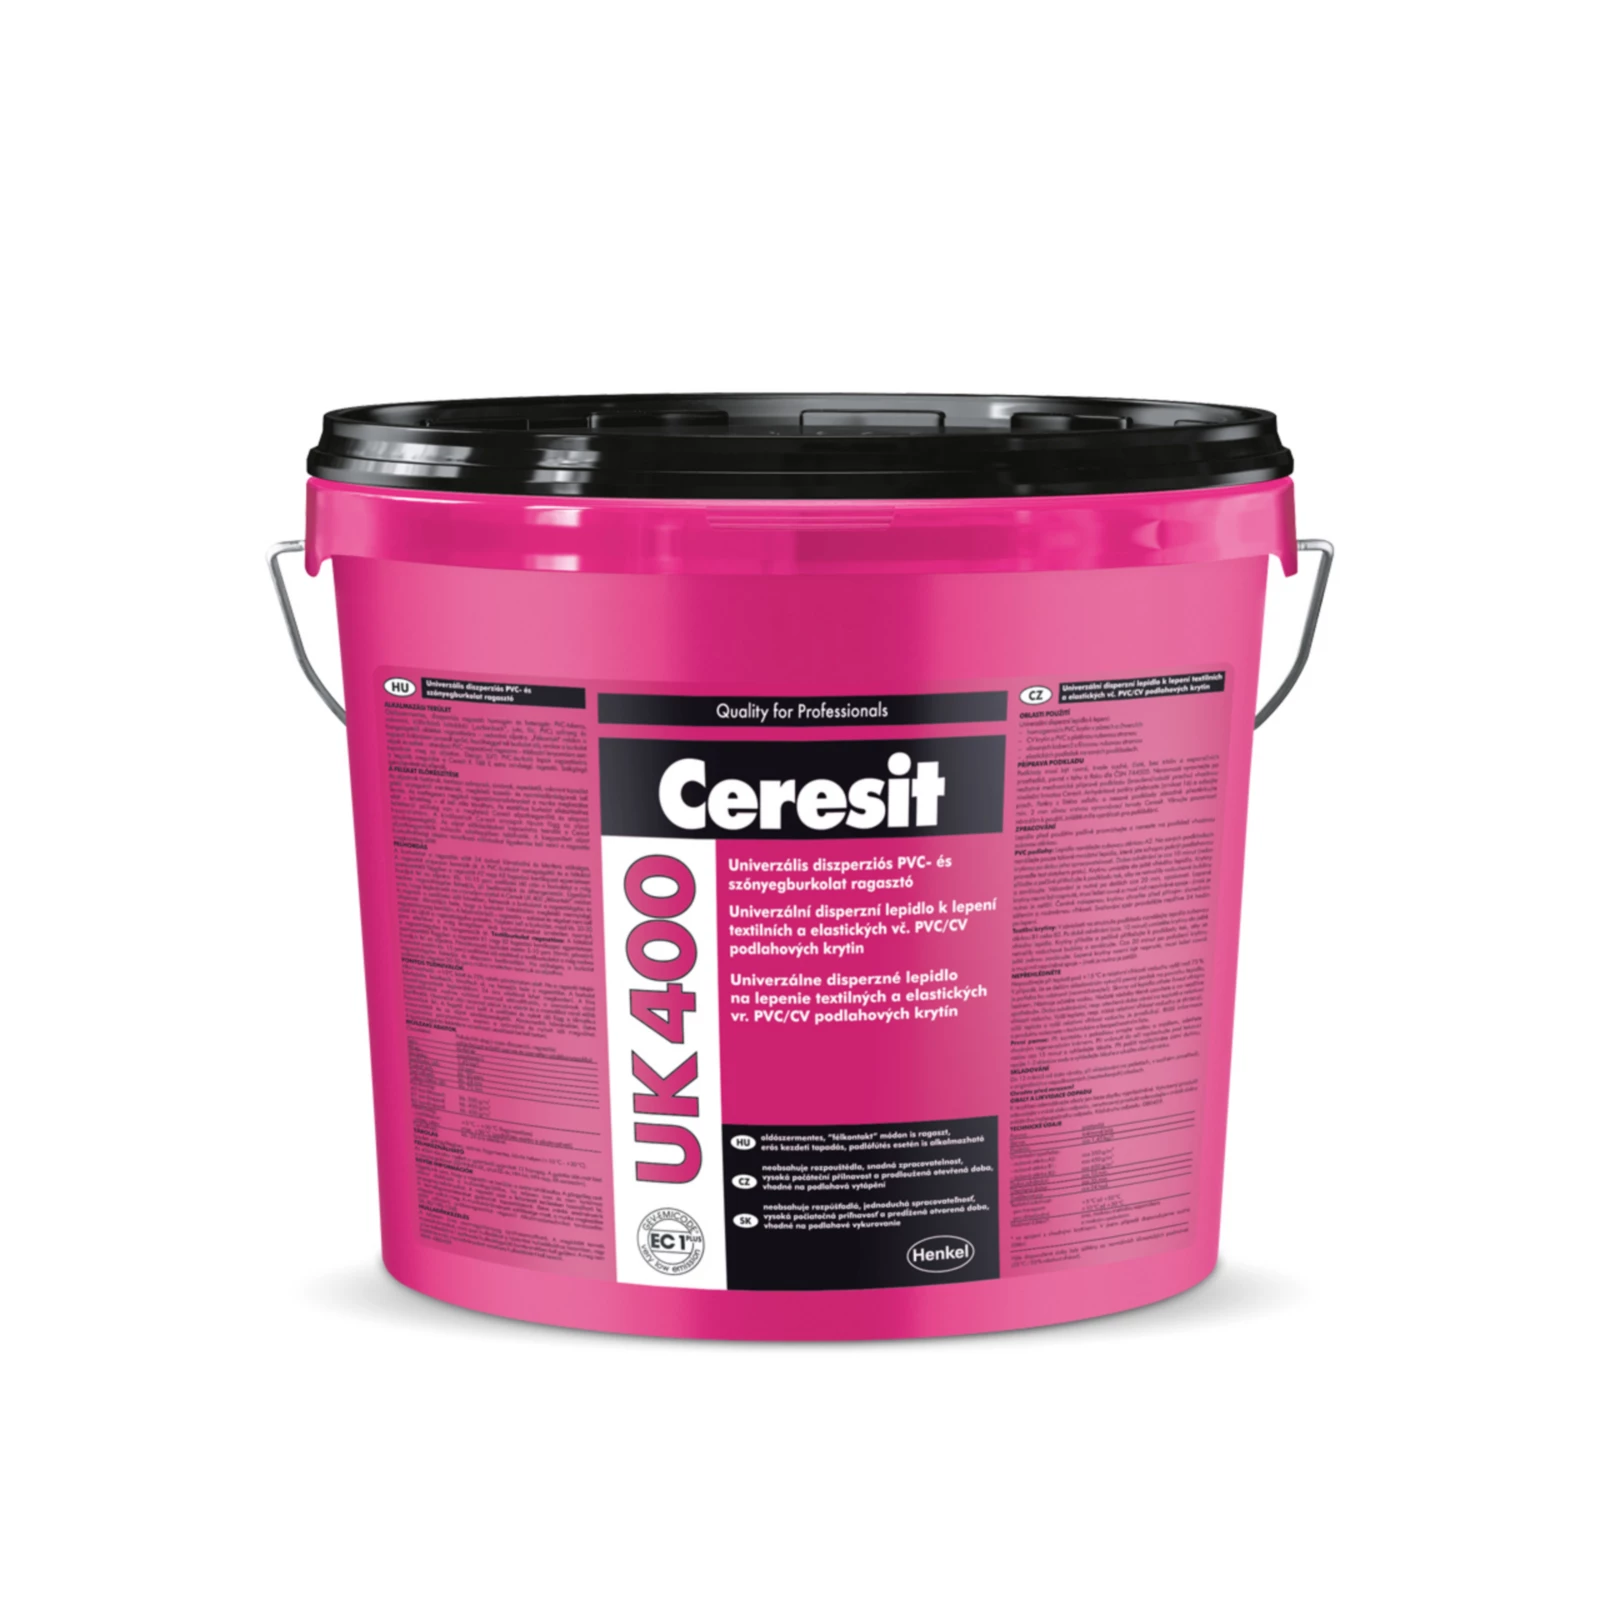 Ceresit UK 400 PVC-, linóleum- és szőnyegburkolat-ragasztó